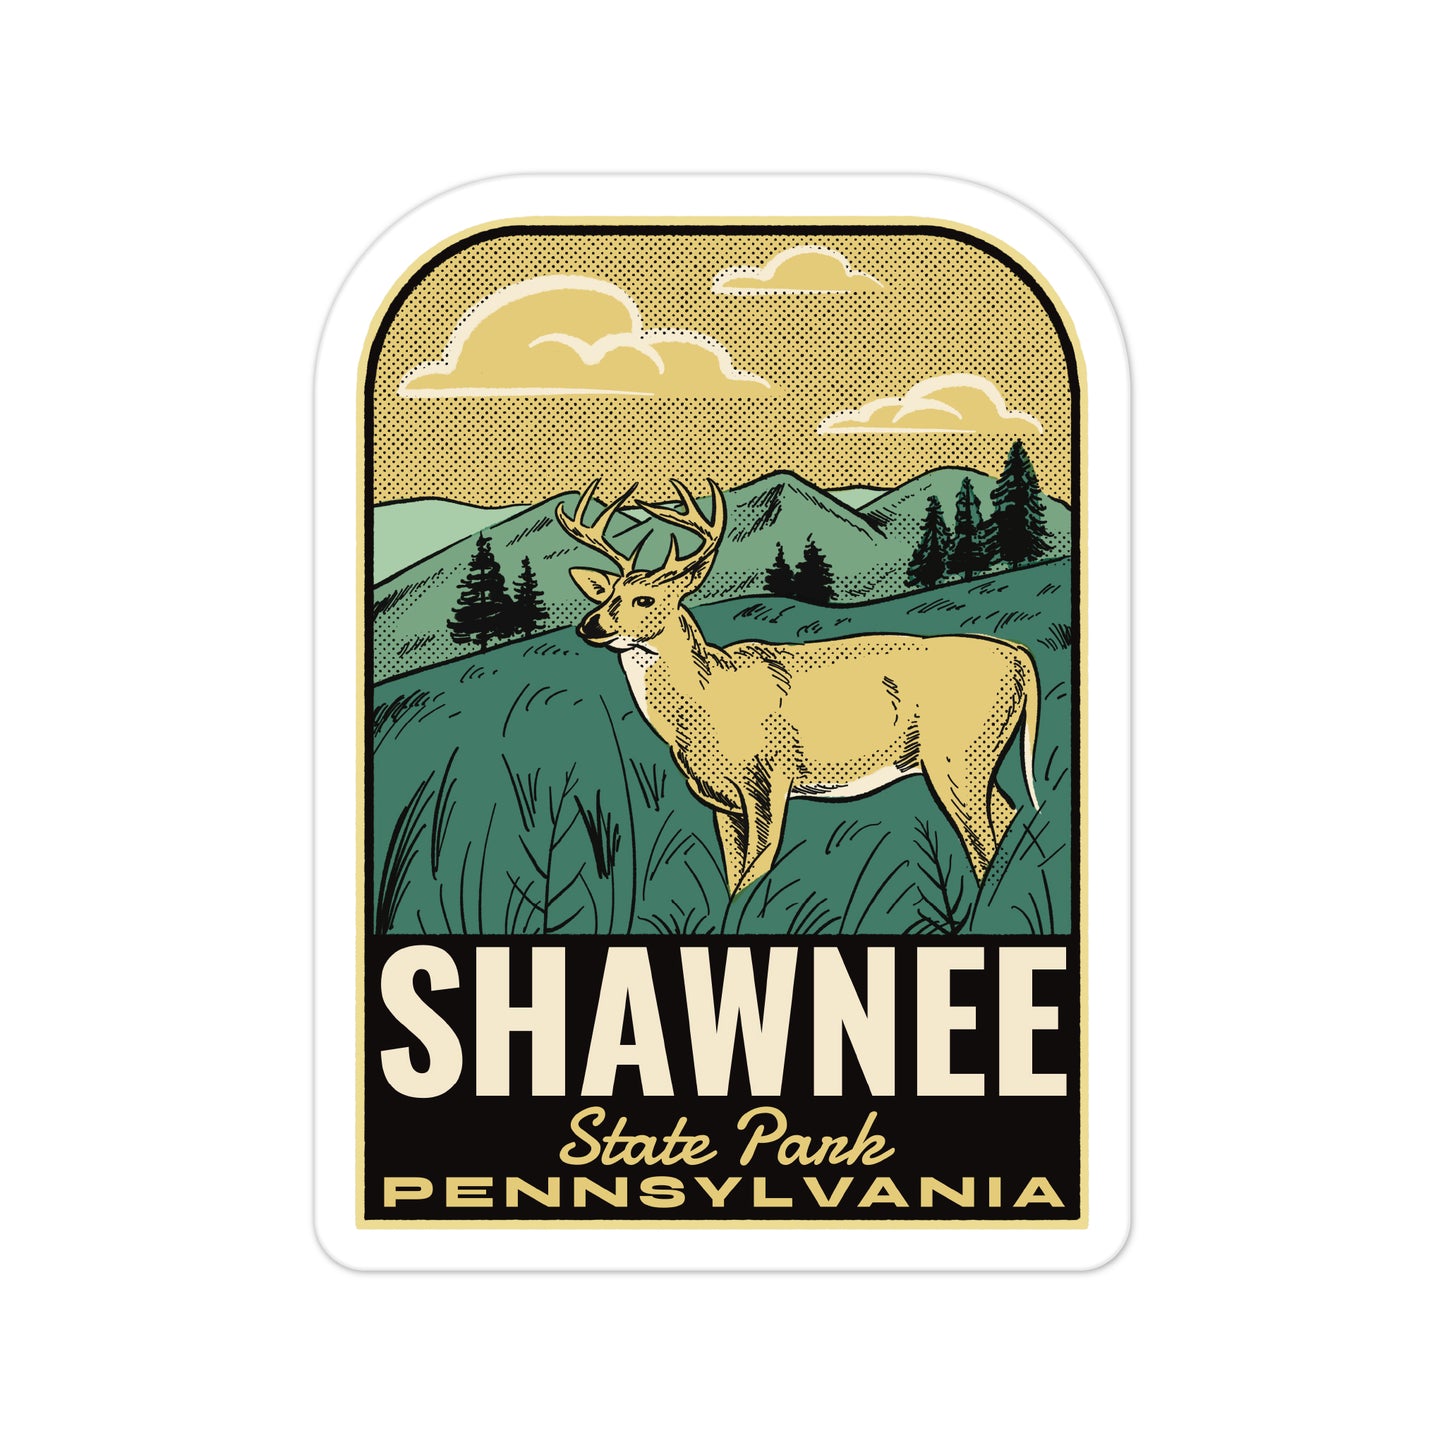 A sticker of Shawnee State Park